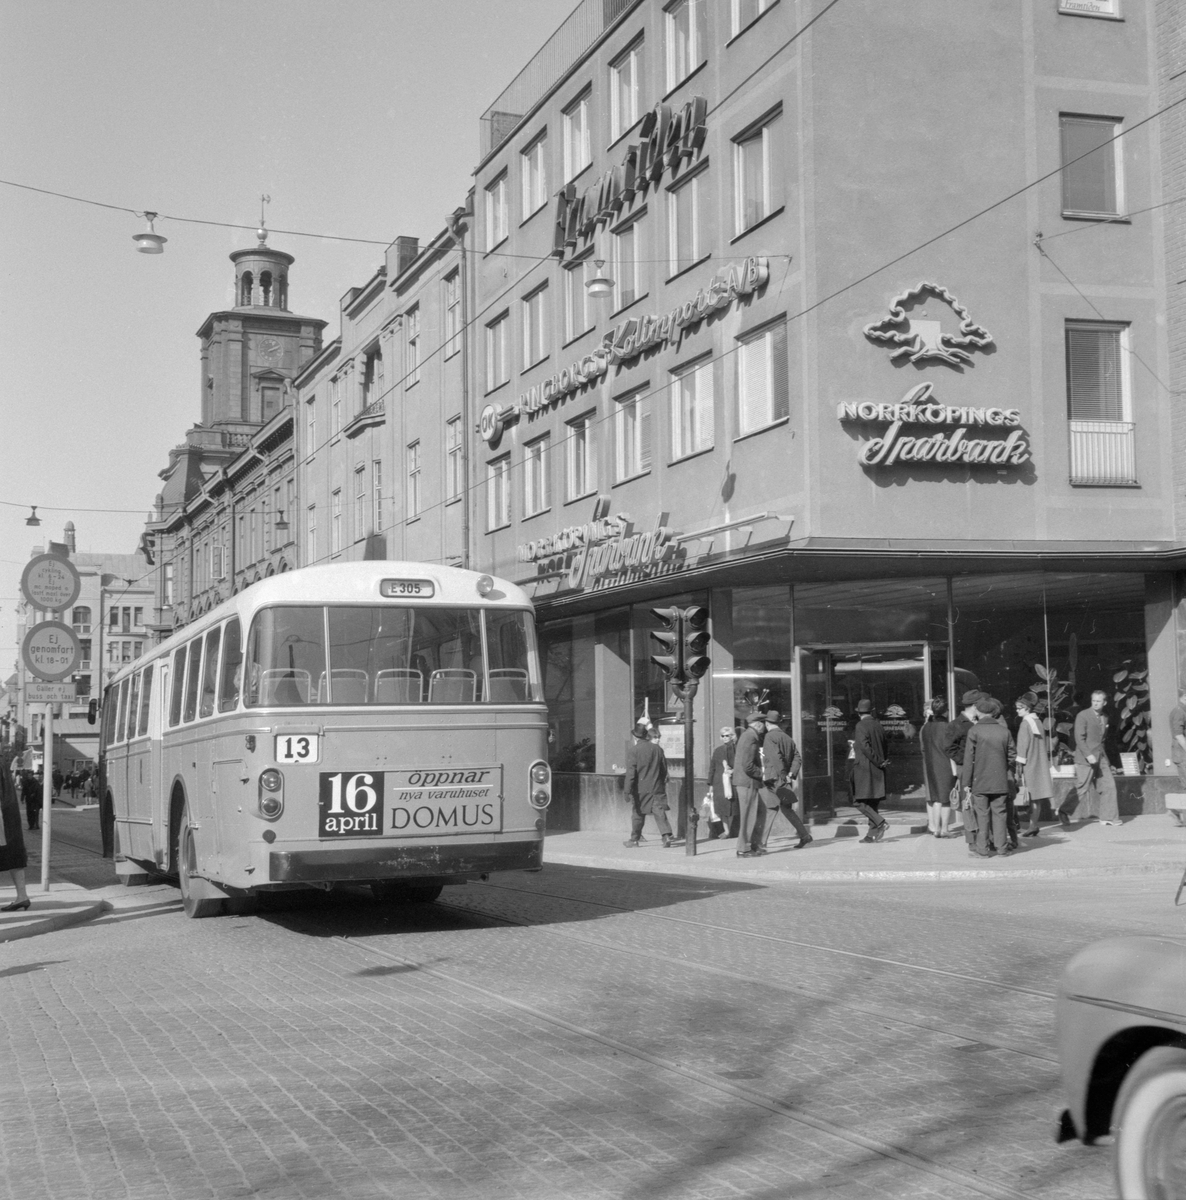 Ögonblick från Norrköping våren 1964. Vy längs Drottninggatan västerut från korsningen av Repslagaregatan. I fonden reser sig kampanilen till S:t Olai kyrka.